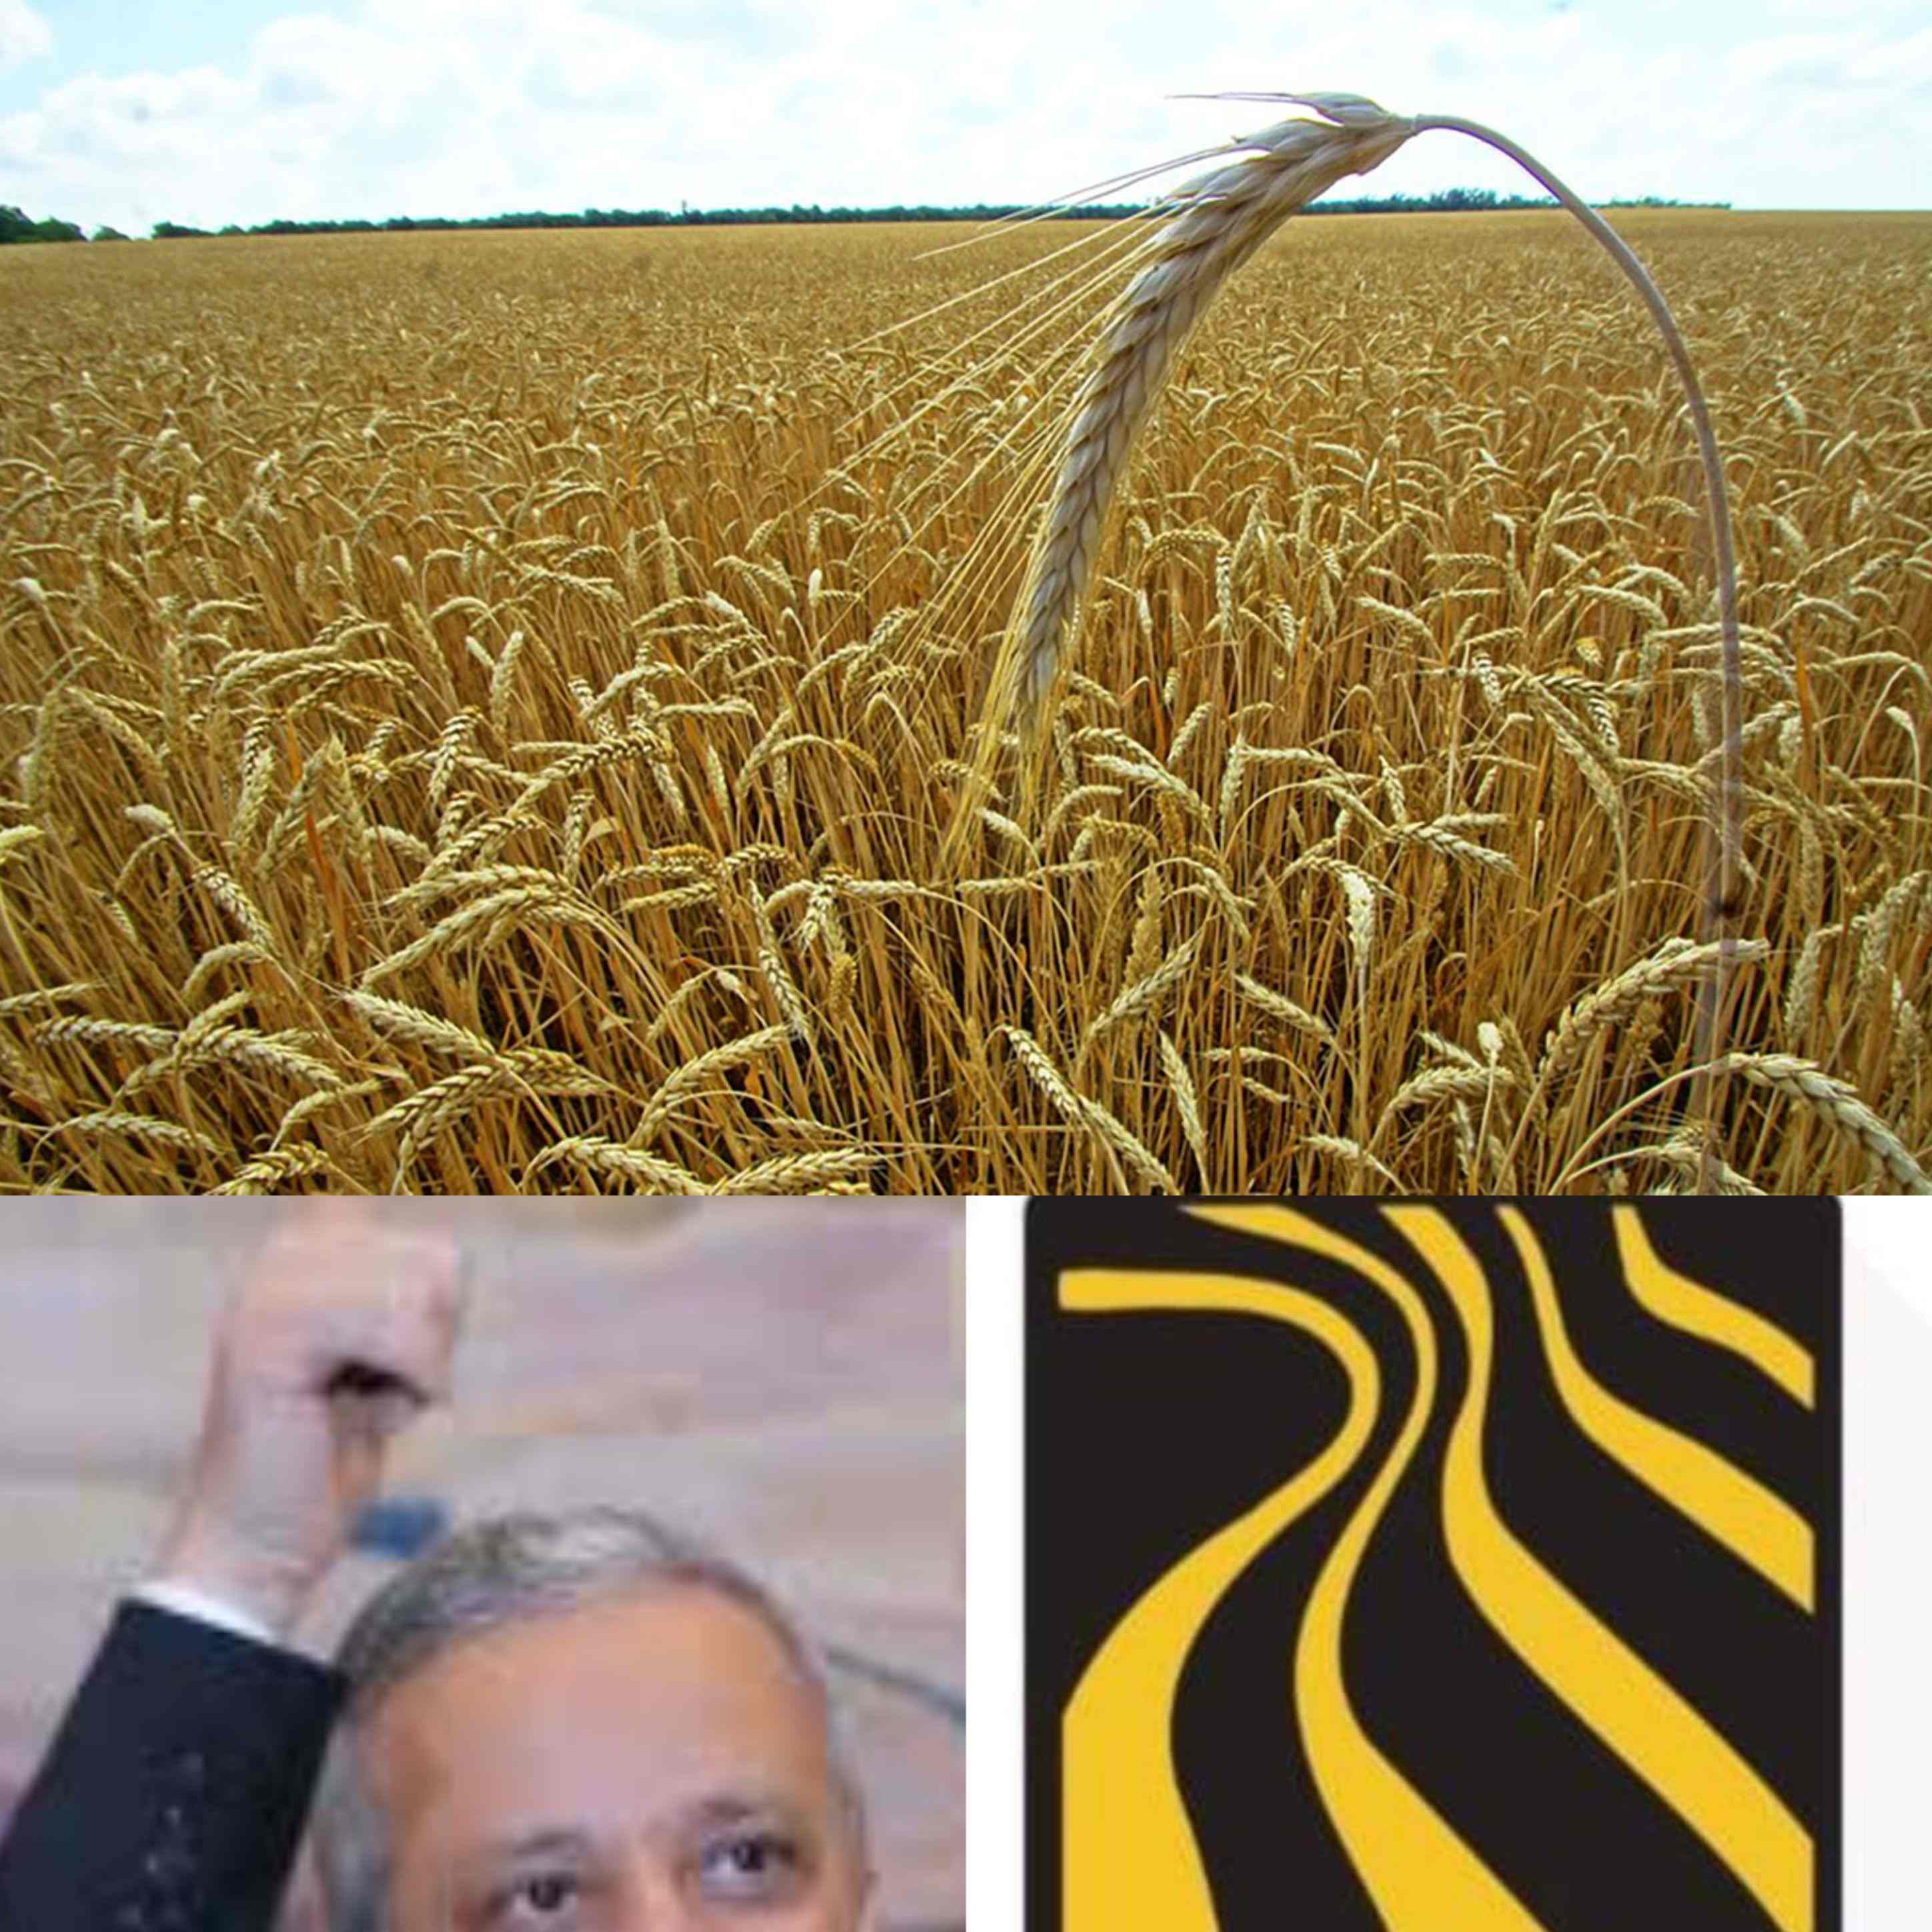 عاجل مجموعة هائل سعيد تتلقى صفعة مدويه بعد إعلان الهند استثناء اليمن من قرار حظر تصدير القمح